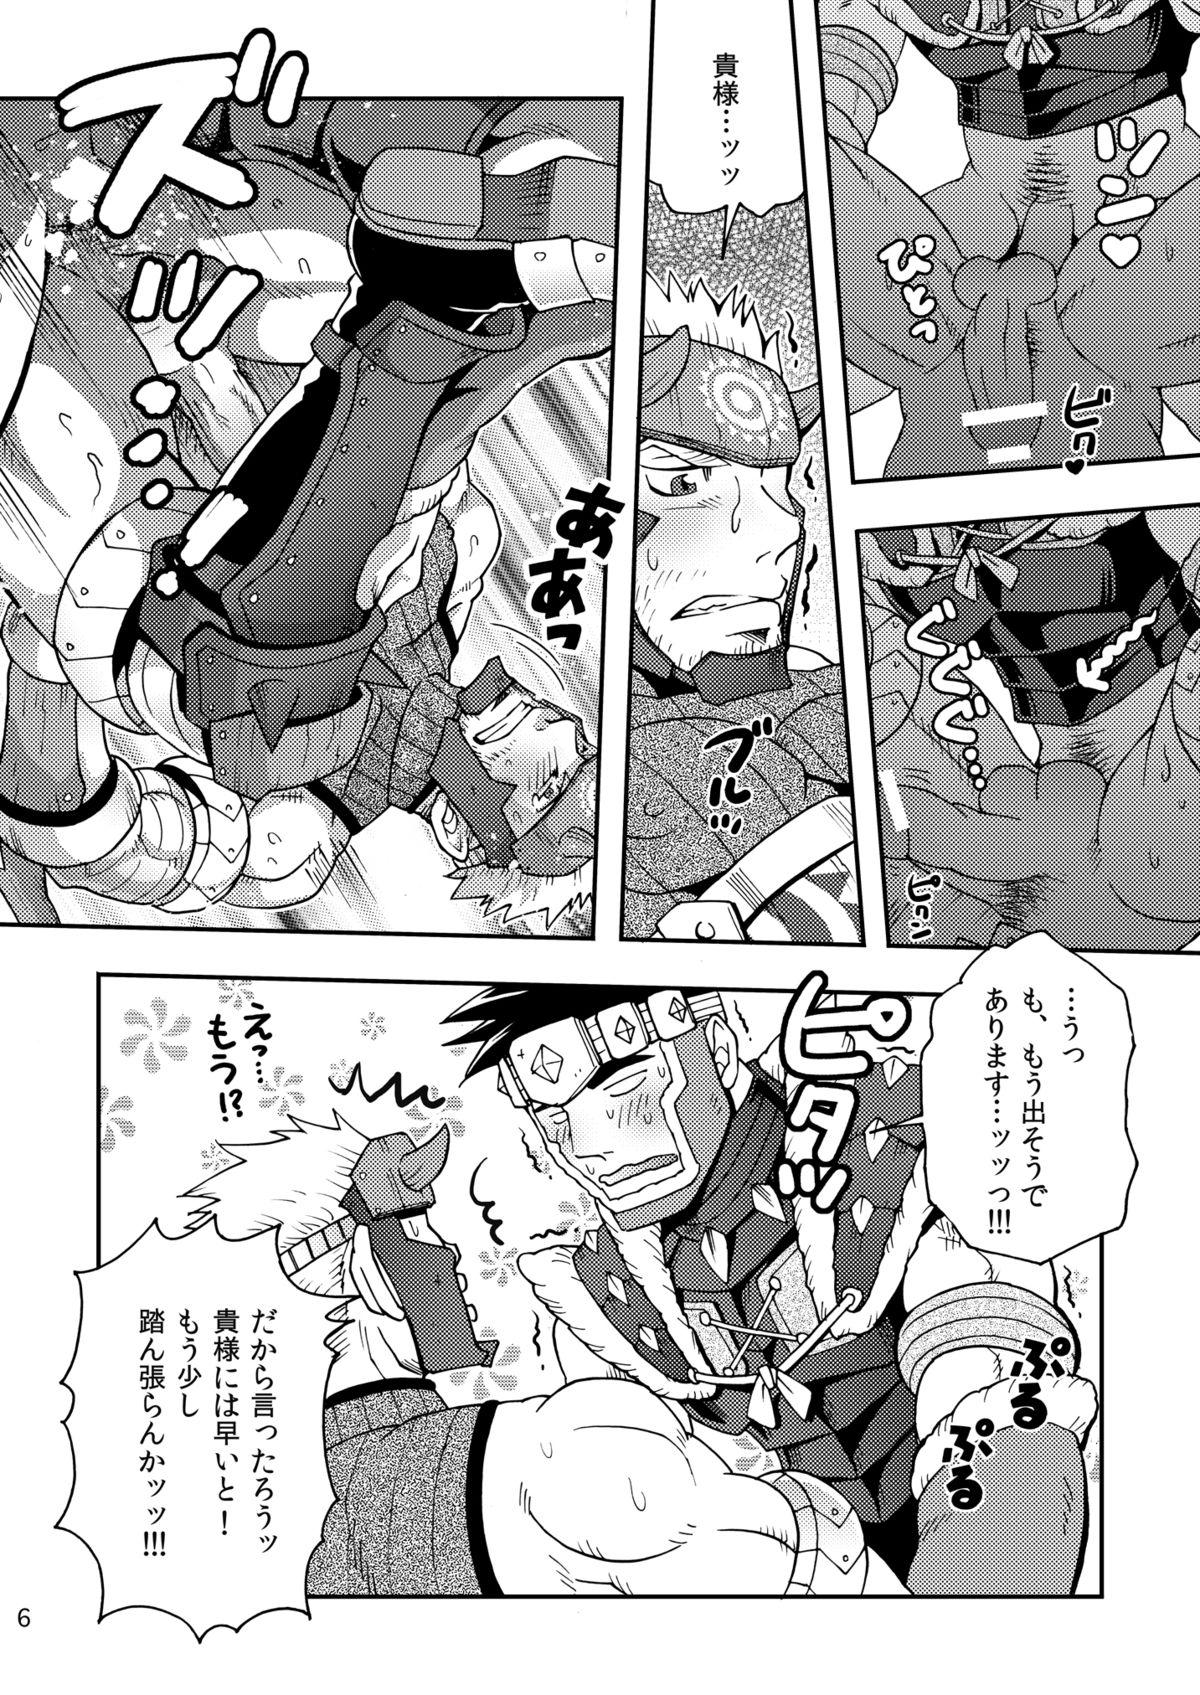 Safada Wagahai no Nitro Dake ga Bakuhatsushi Souna noda! - Monster hunter Stream - Page 5